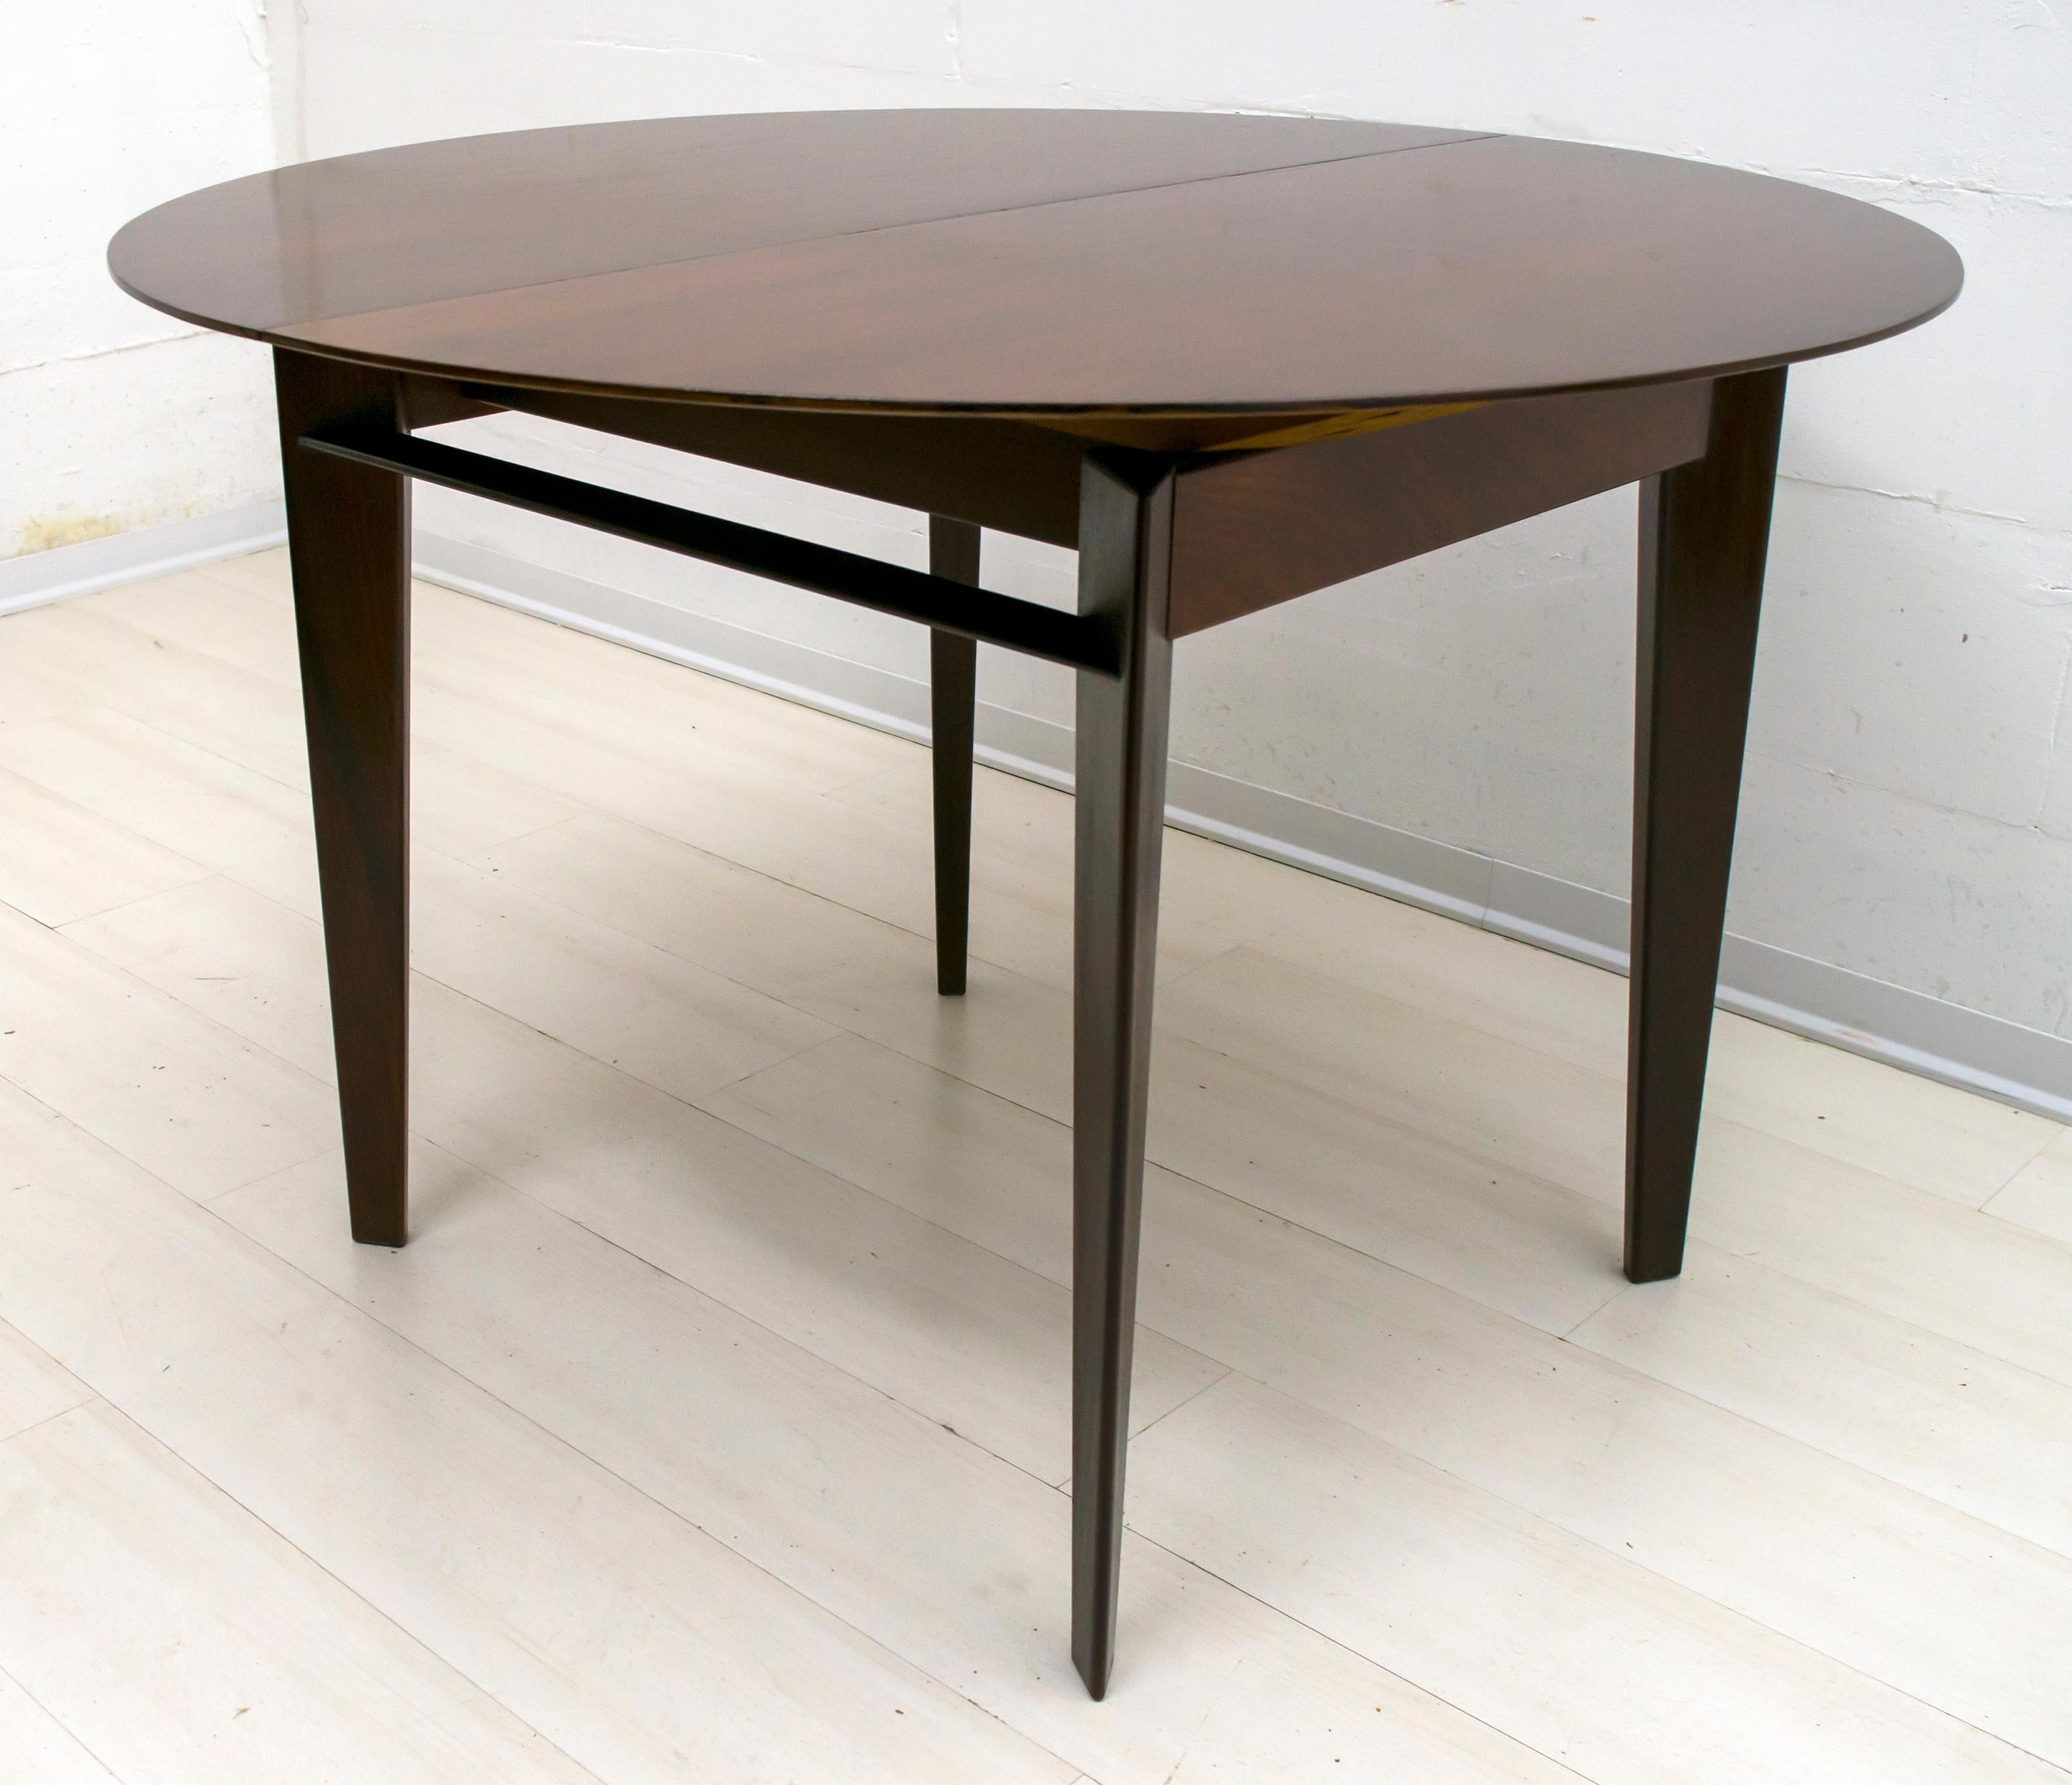 Dieser Tisch wurde in den 1950er Jahren von dem berühmten italienischen Designer Edmondo Palutari für Vittorio Dassi in Italien aus Teakholz entworfen.
Der Tisch kann aufgeklappt werden und hat zwei Verlängerungen, die sich zusammenklappen und am